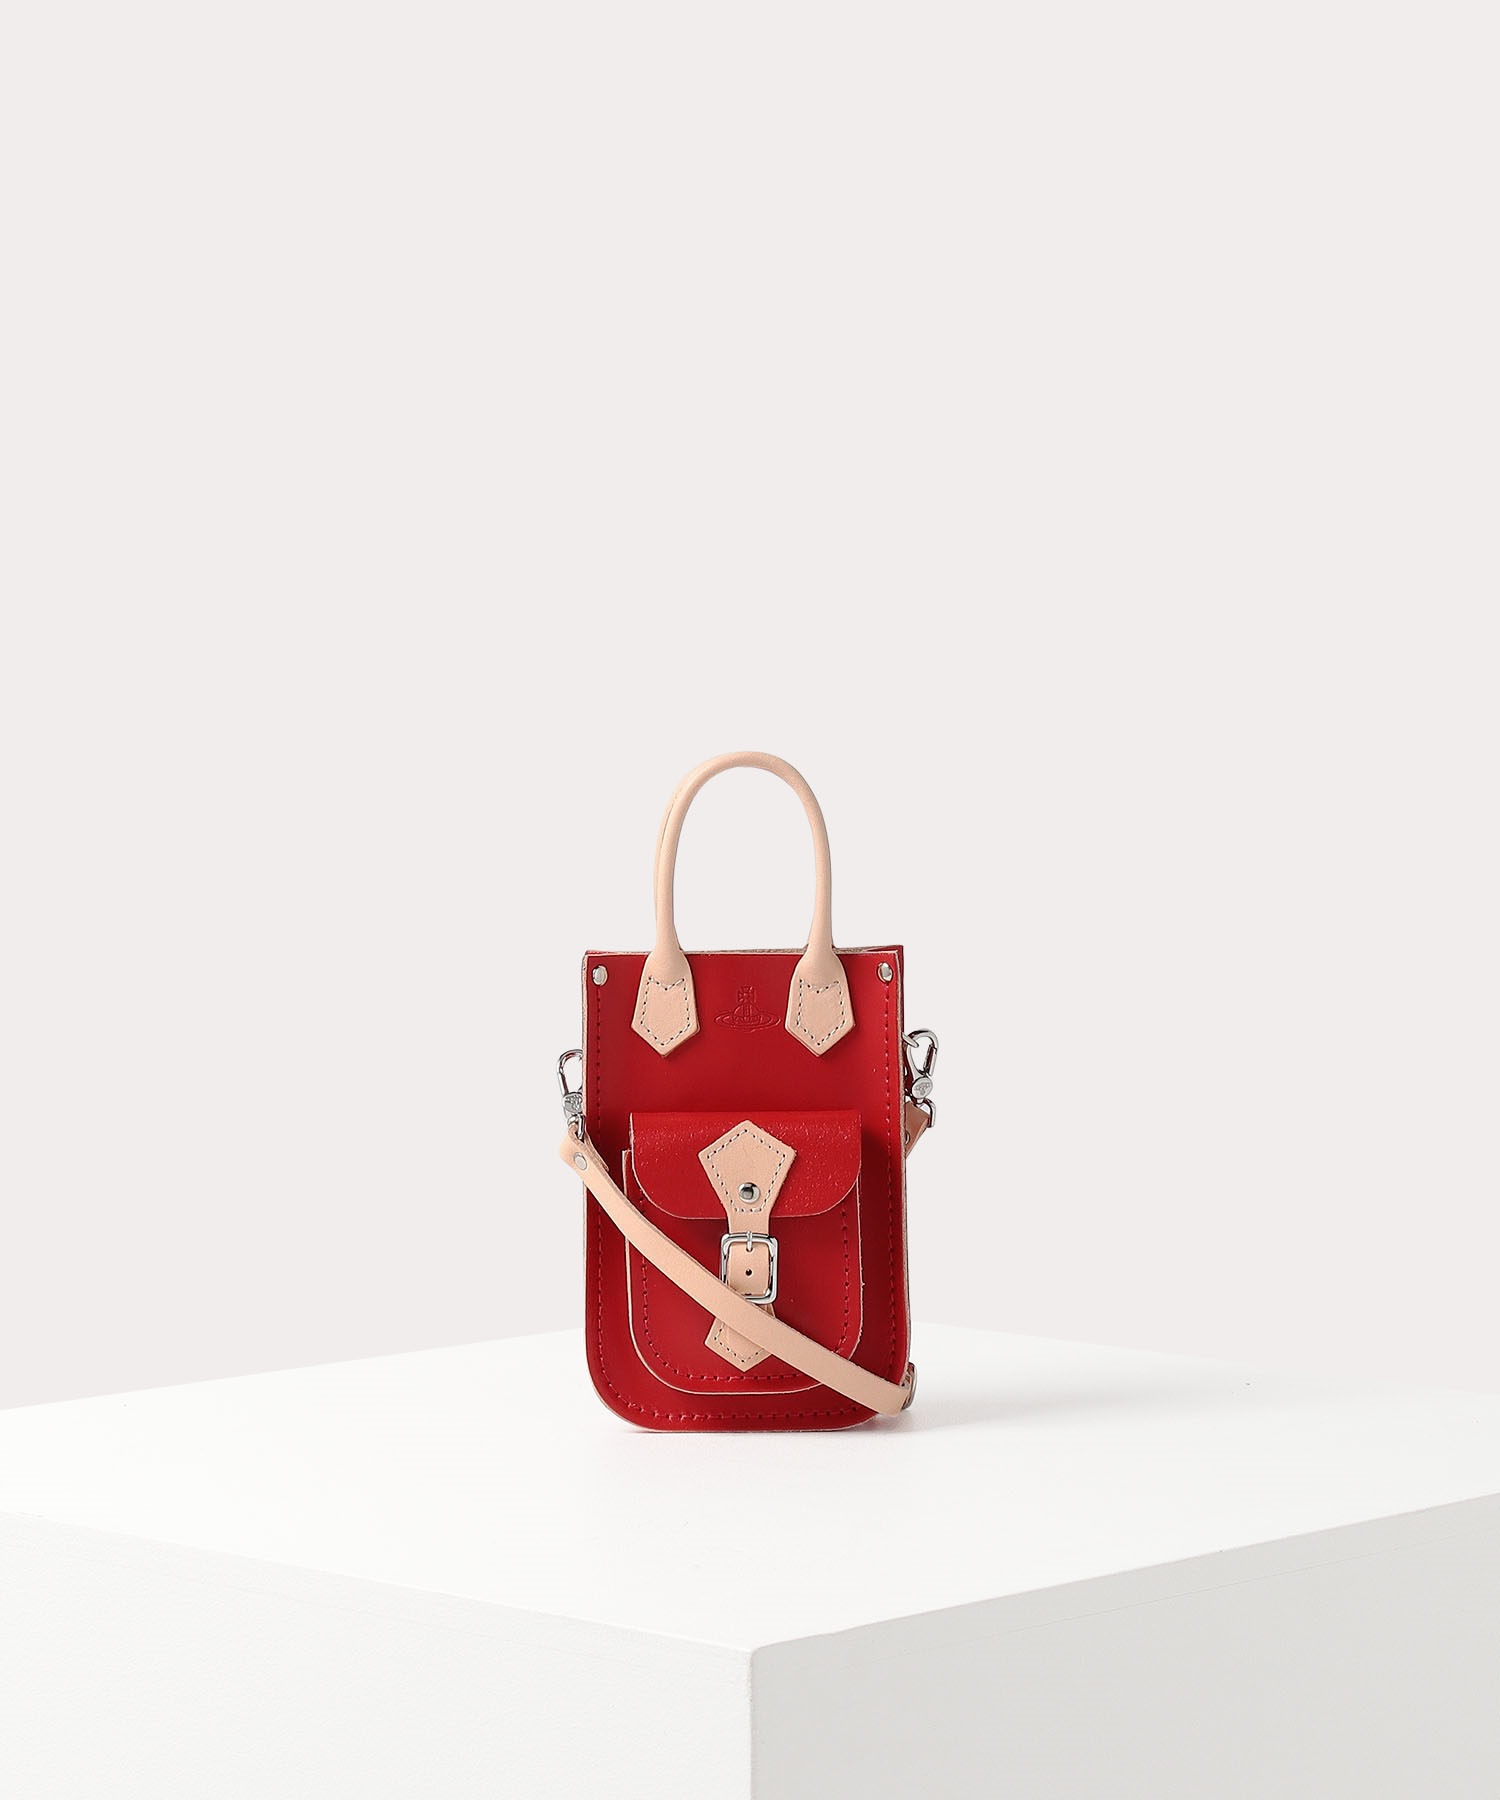 Vivienne Westwood 革製レディースバッグ